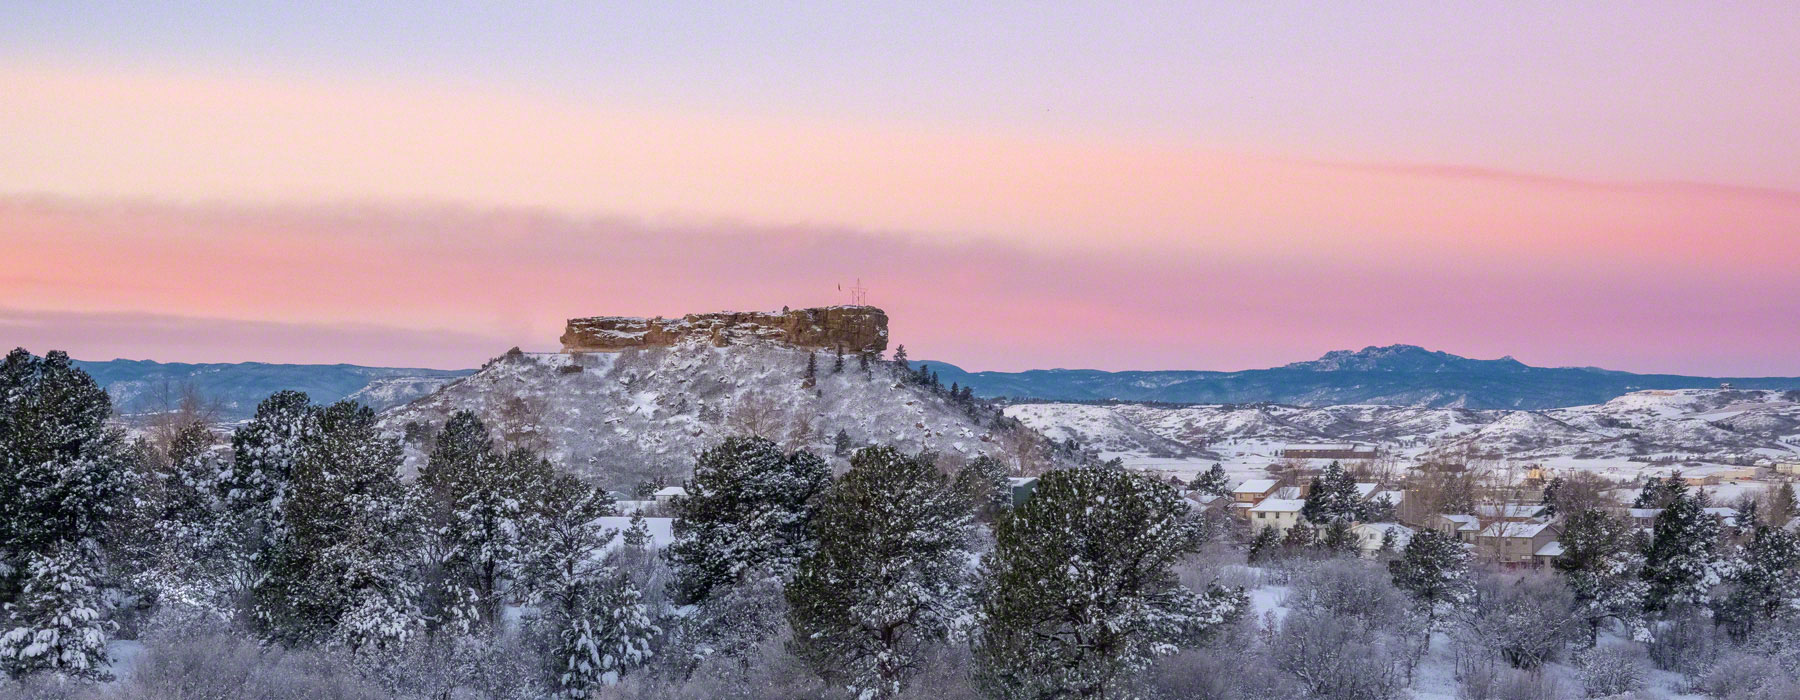 Castle Rock Colorado Winter Landscape Photos 2019